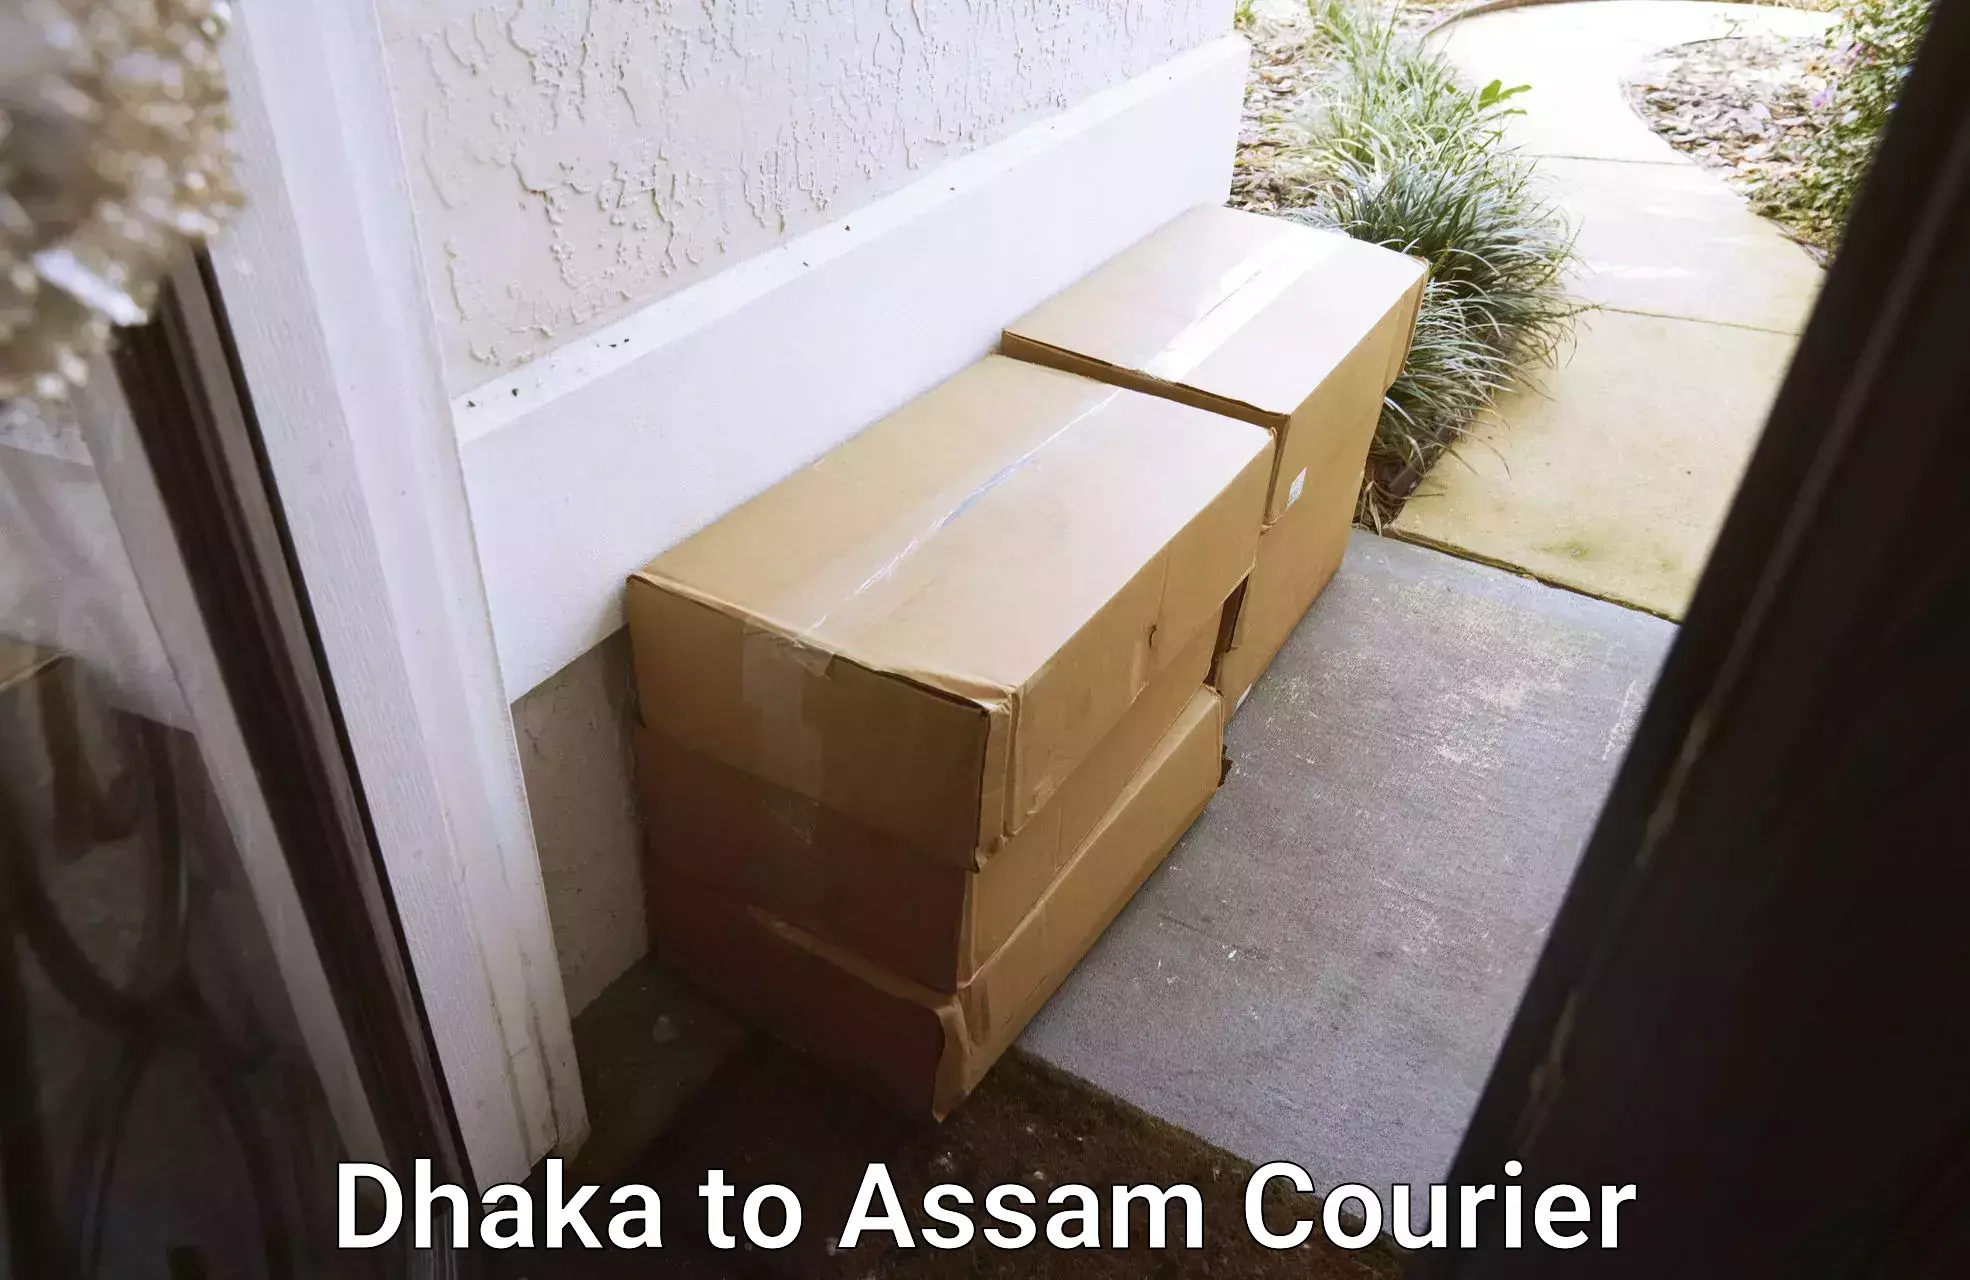 Furniture transport service Dhaka to Jorhat